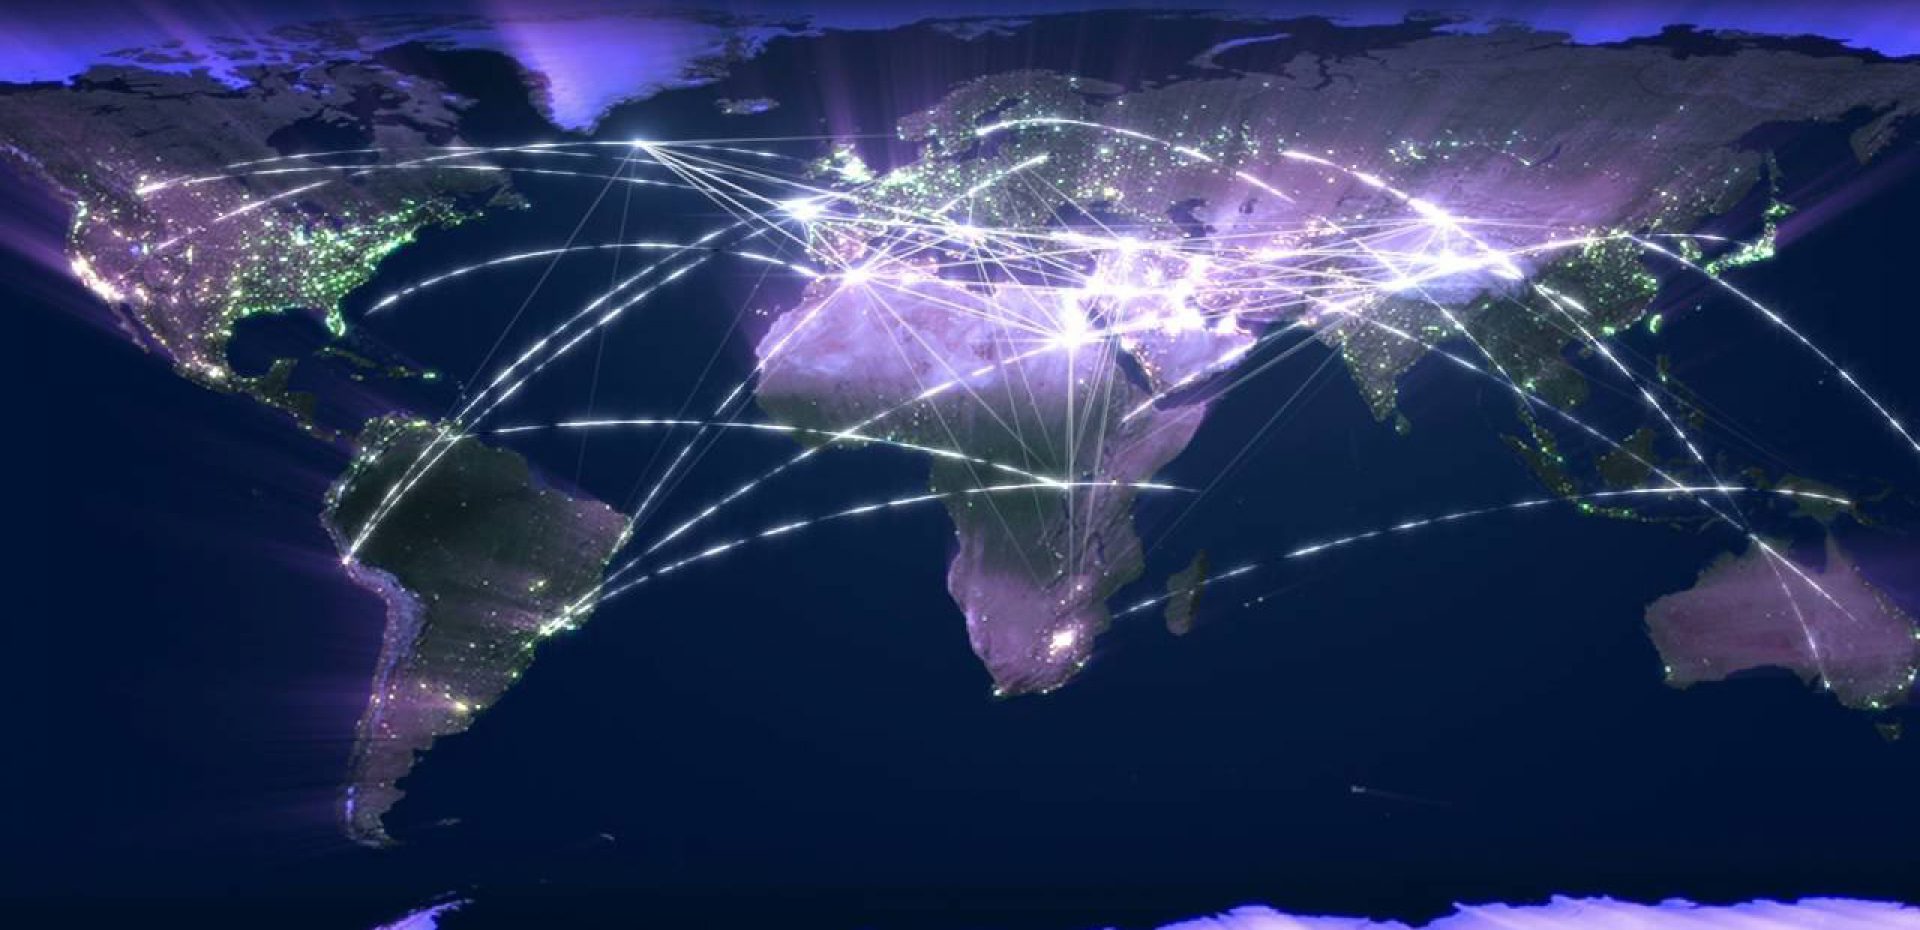 سریع‌ترین و کندترین اینترنت برای کدام کشورهاست؟